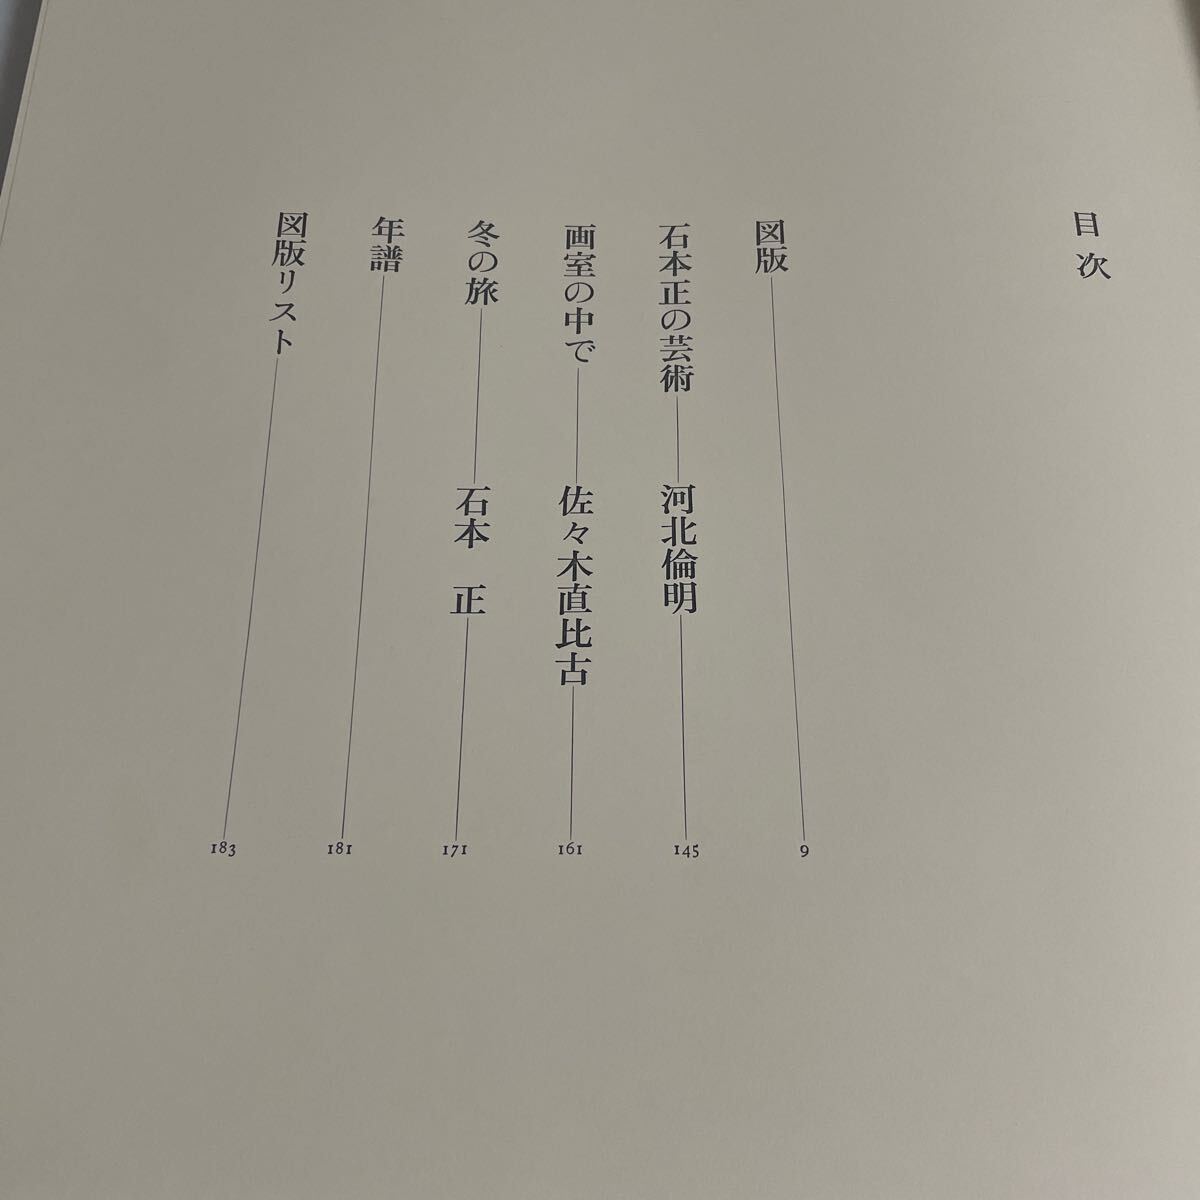 限定版 石本正自選画集 限定1450部の内 第699番 昭和55年発行 集英社 裸婦 図録 作品集の画像8